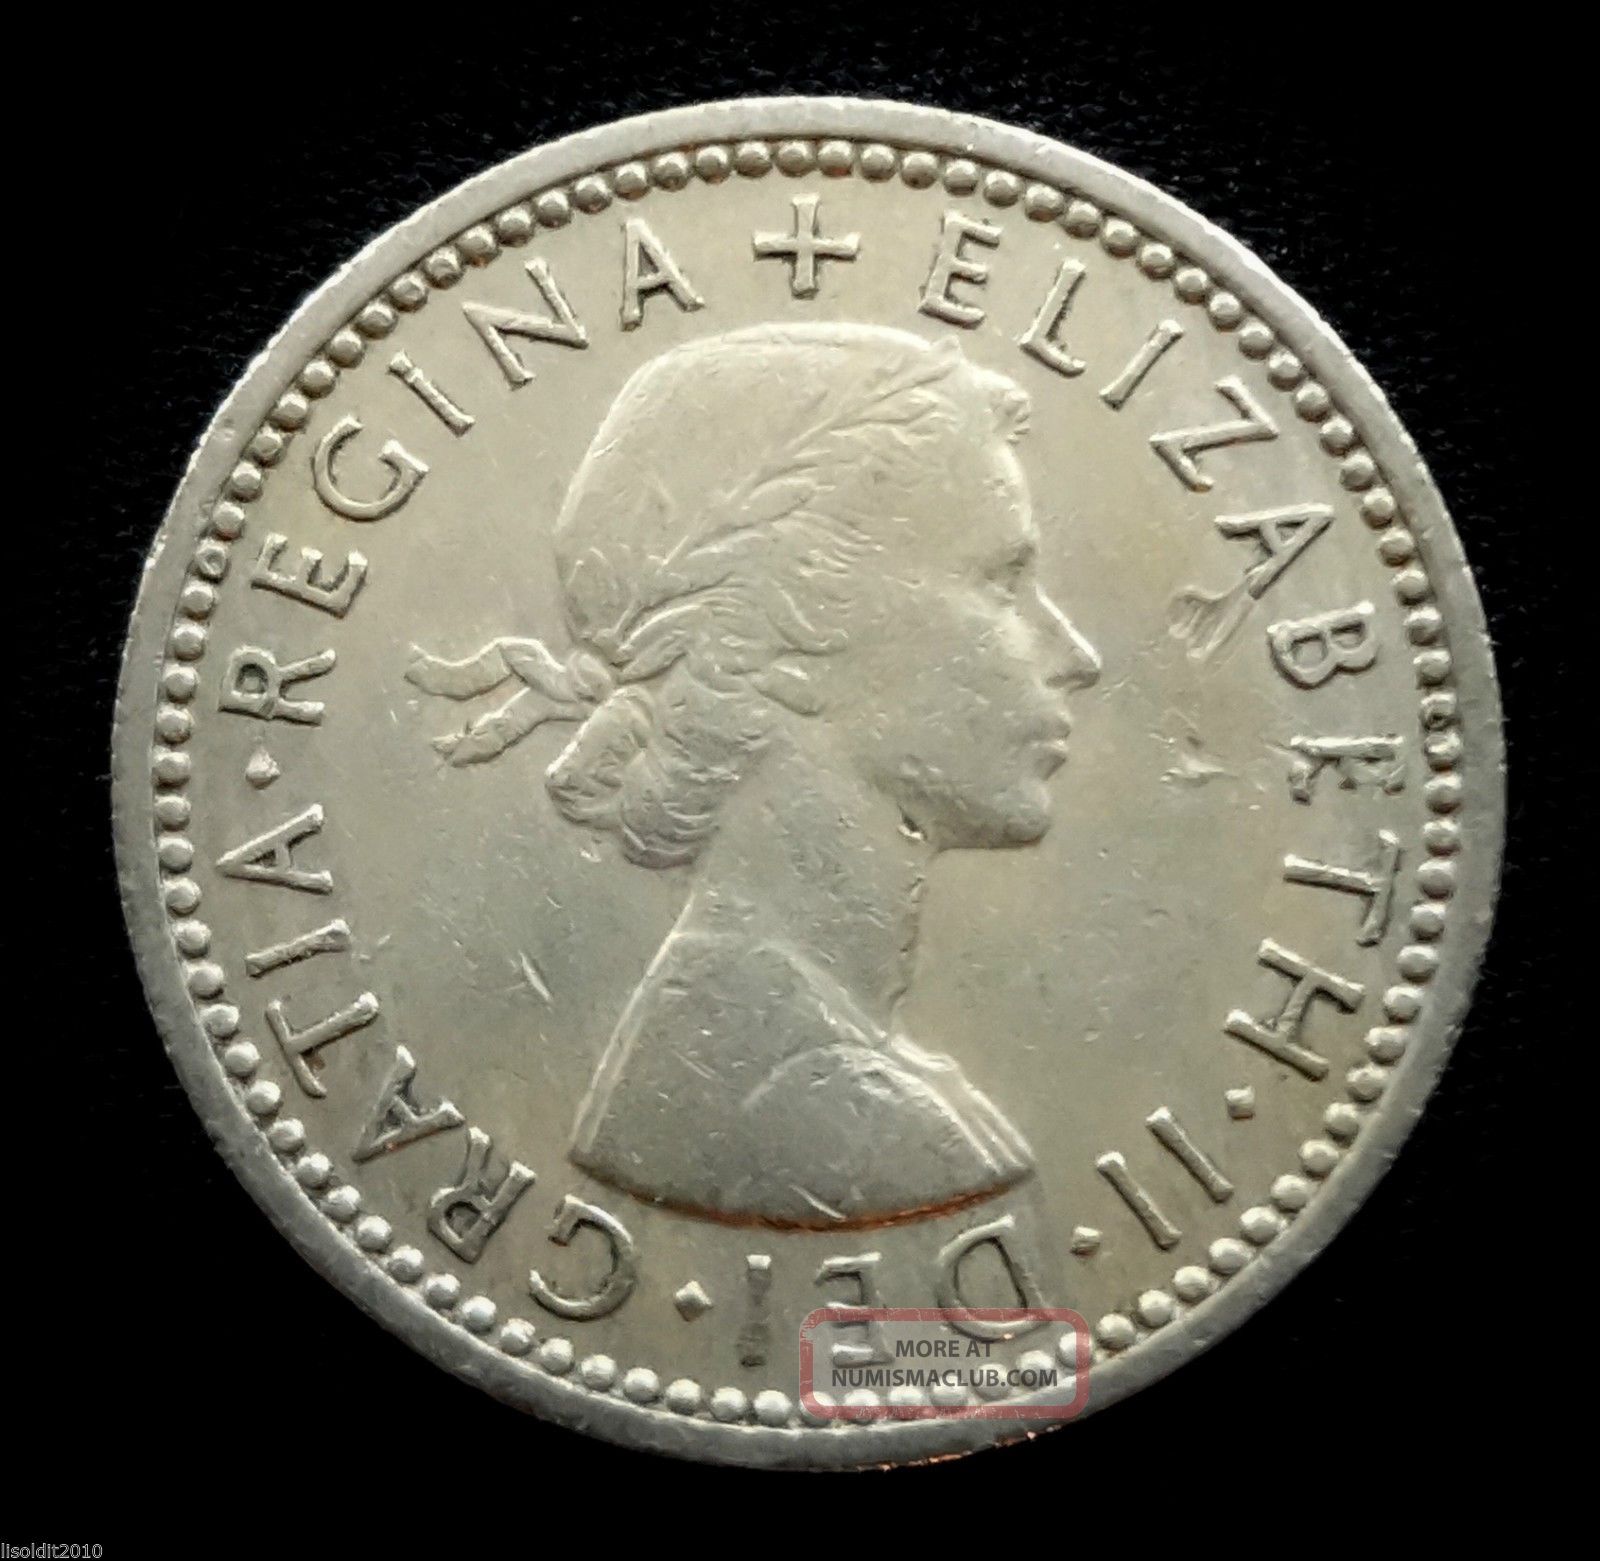 Uk, Great Britain 1956 6 Pence Elizabeth Ii Tudor Rose " Coin